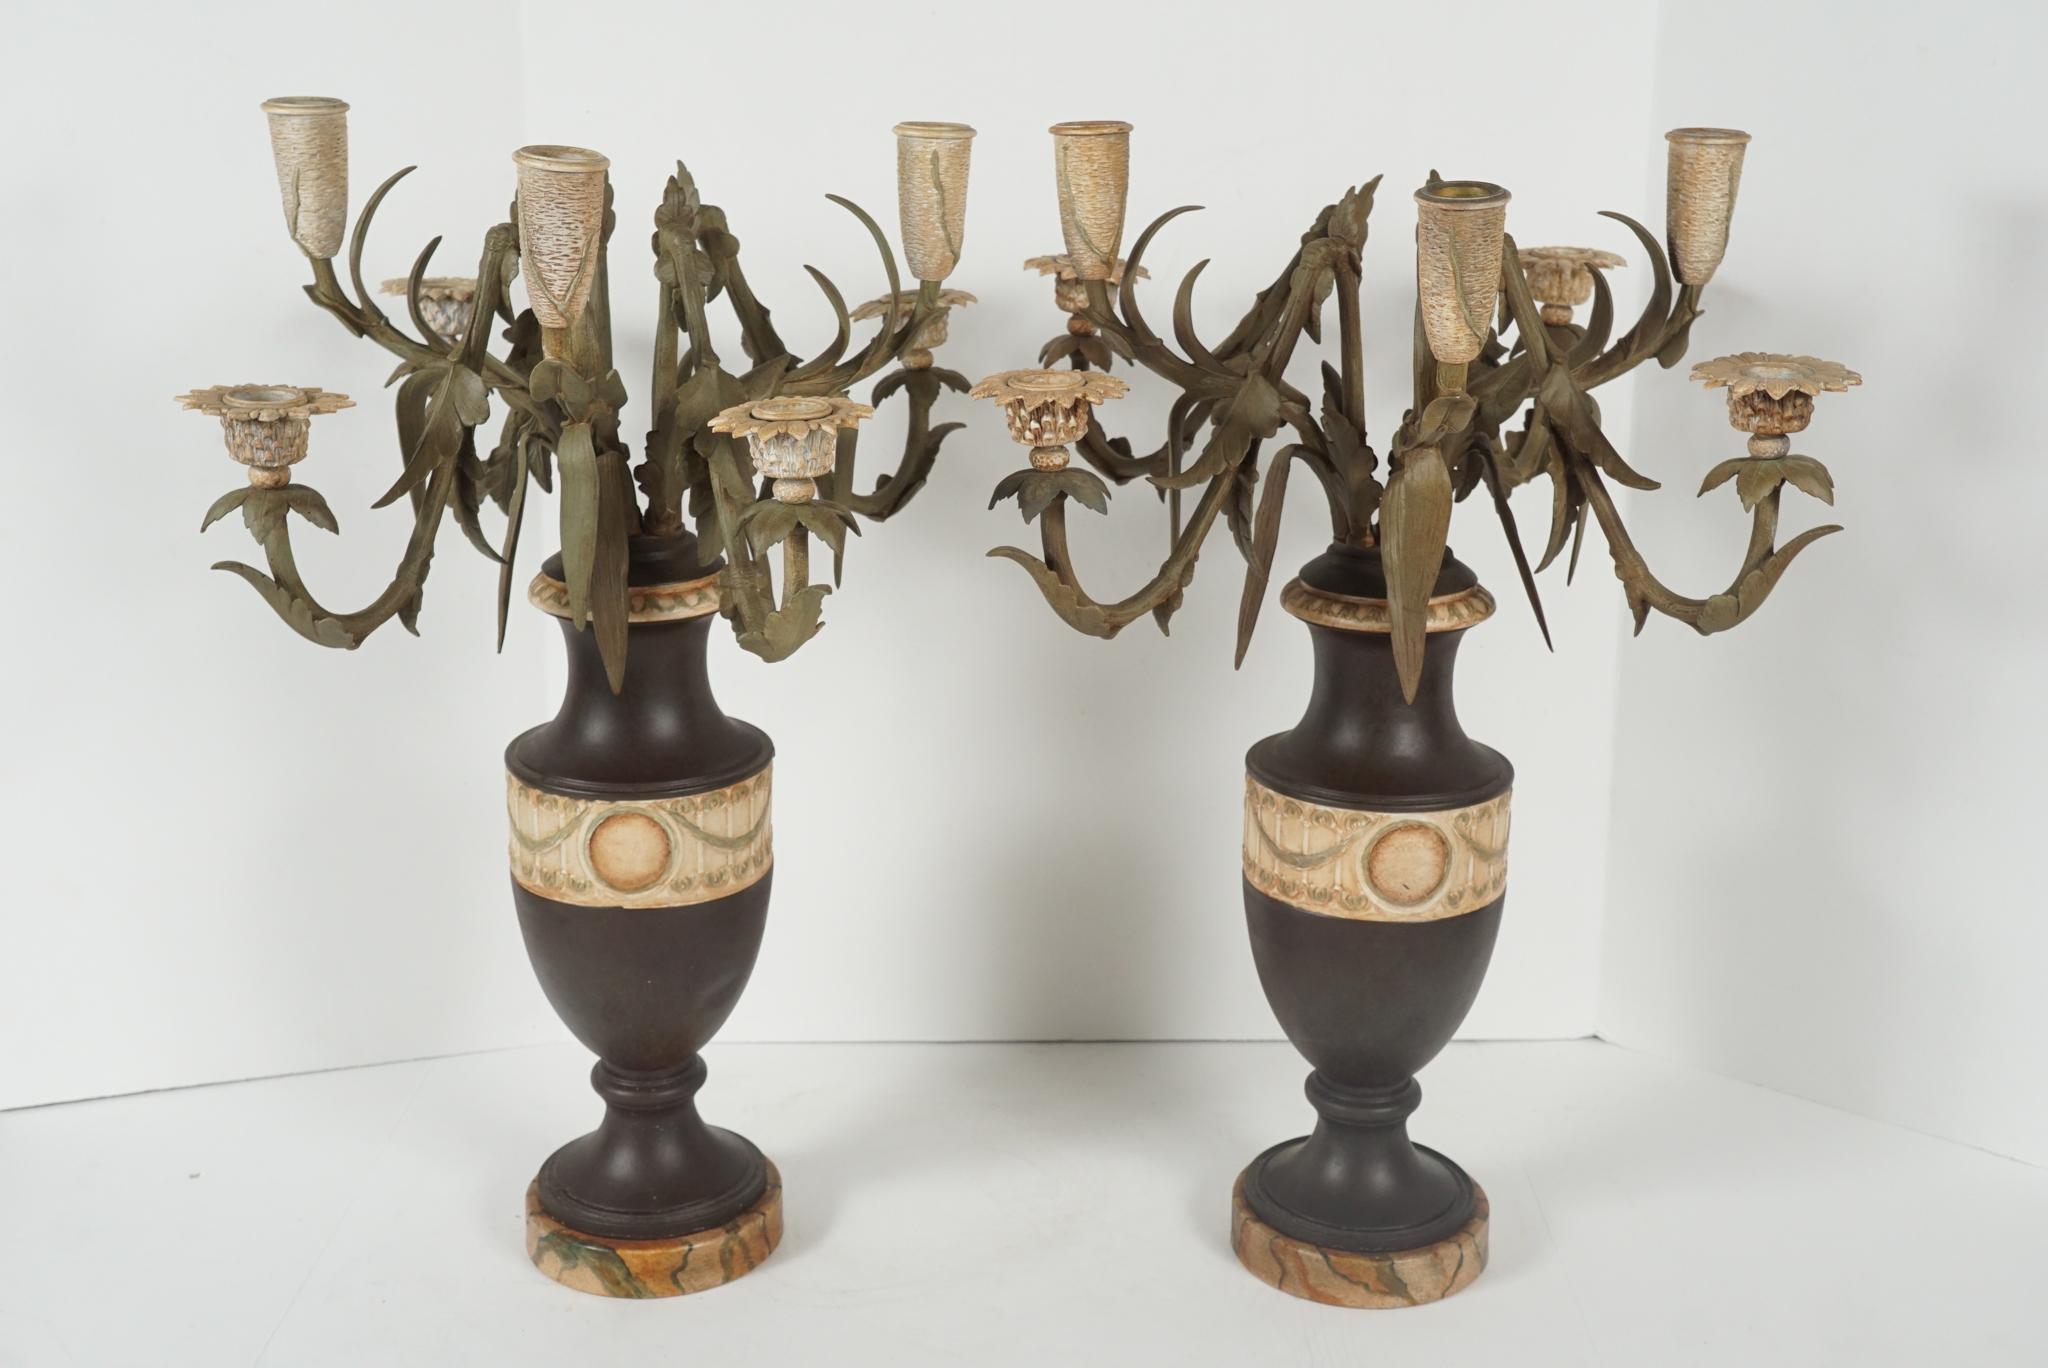 Cette paire de candélabres en forme d'urnes contenant des arrangements floraux est française et a été coulée en bronze dans les années 1870. Il est possible qu'ils aient été dorés à une certaine époque, mais ils sont maintenant peints à la main et